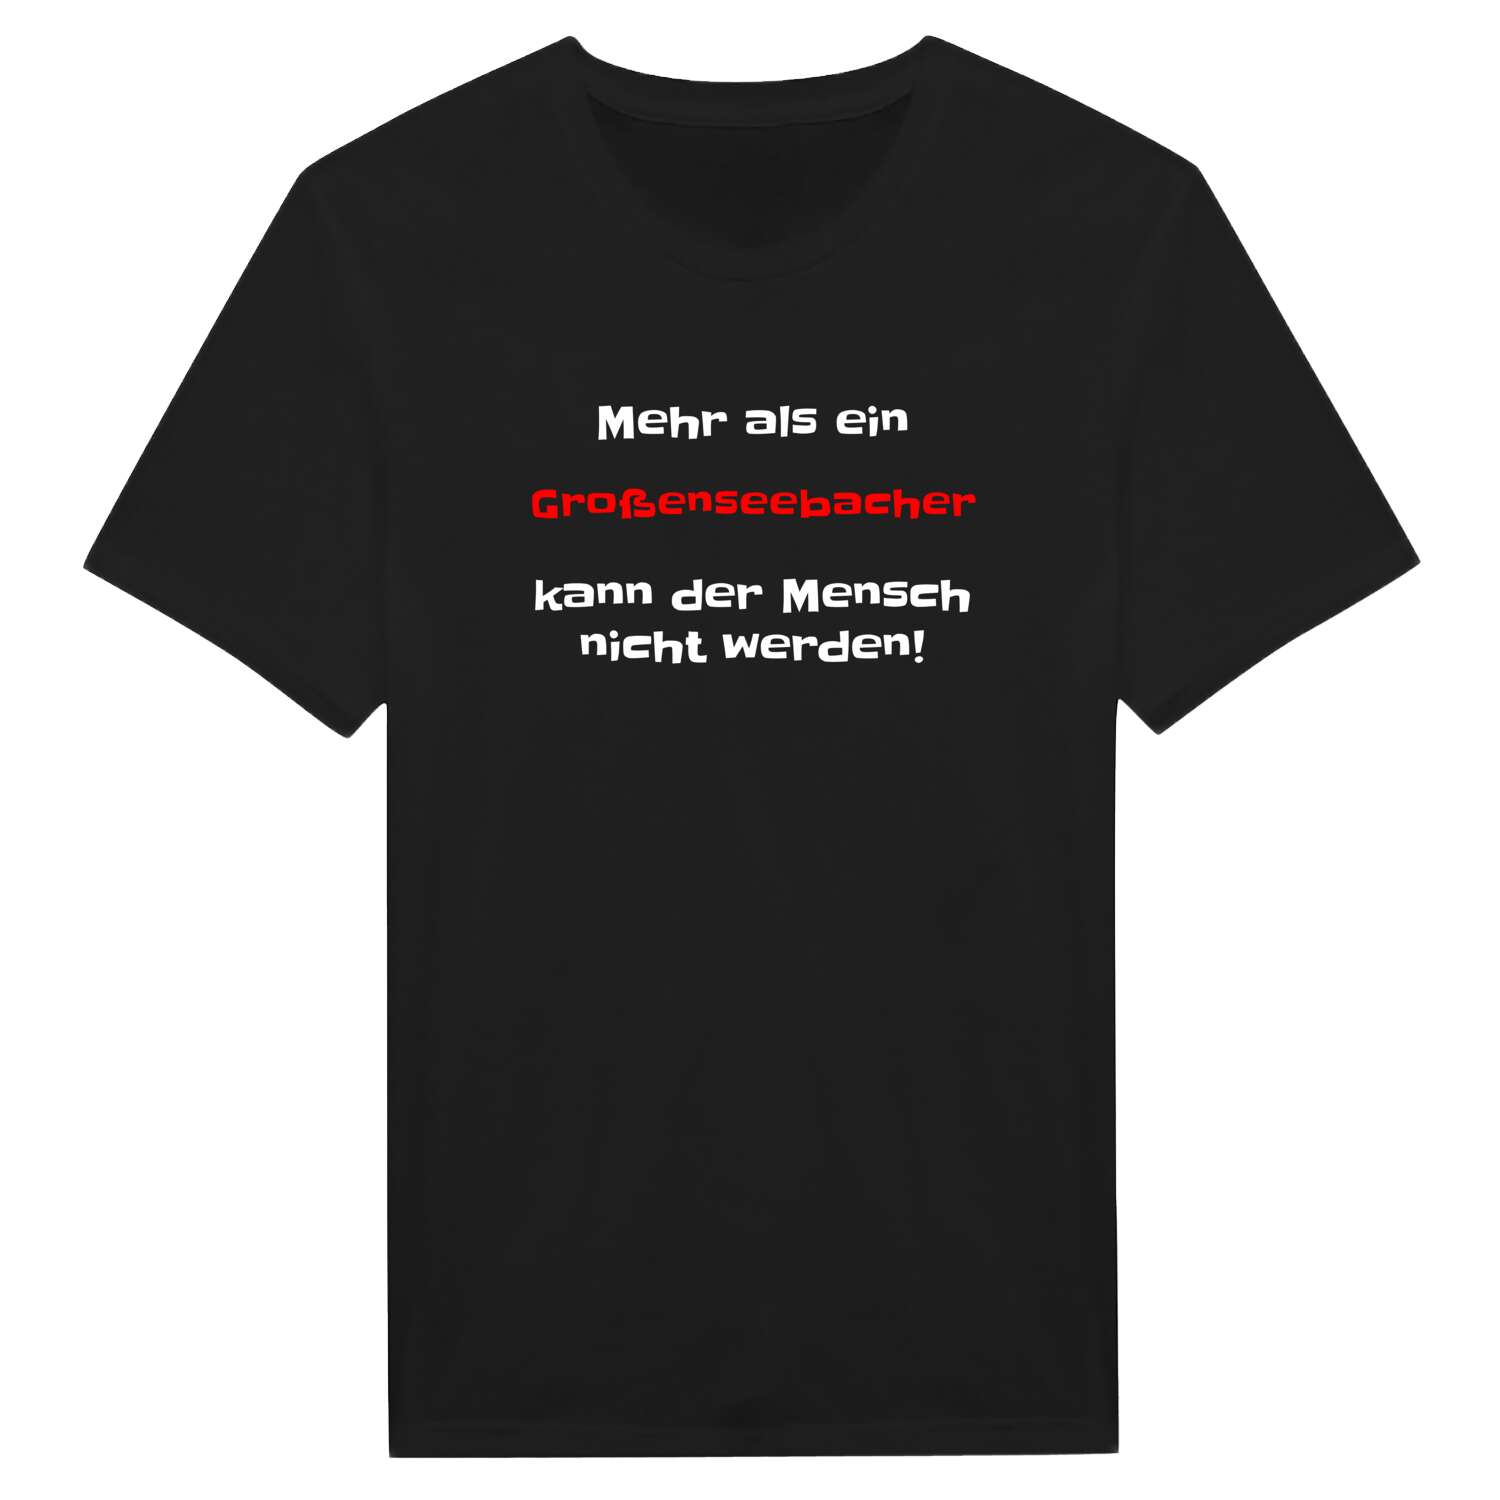 Großenseebach T-Shirt »Mehr als ein«